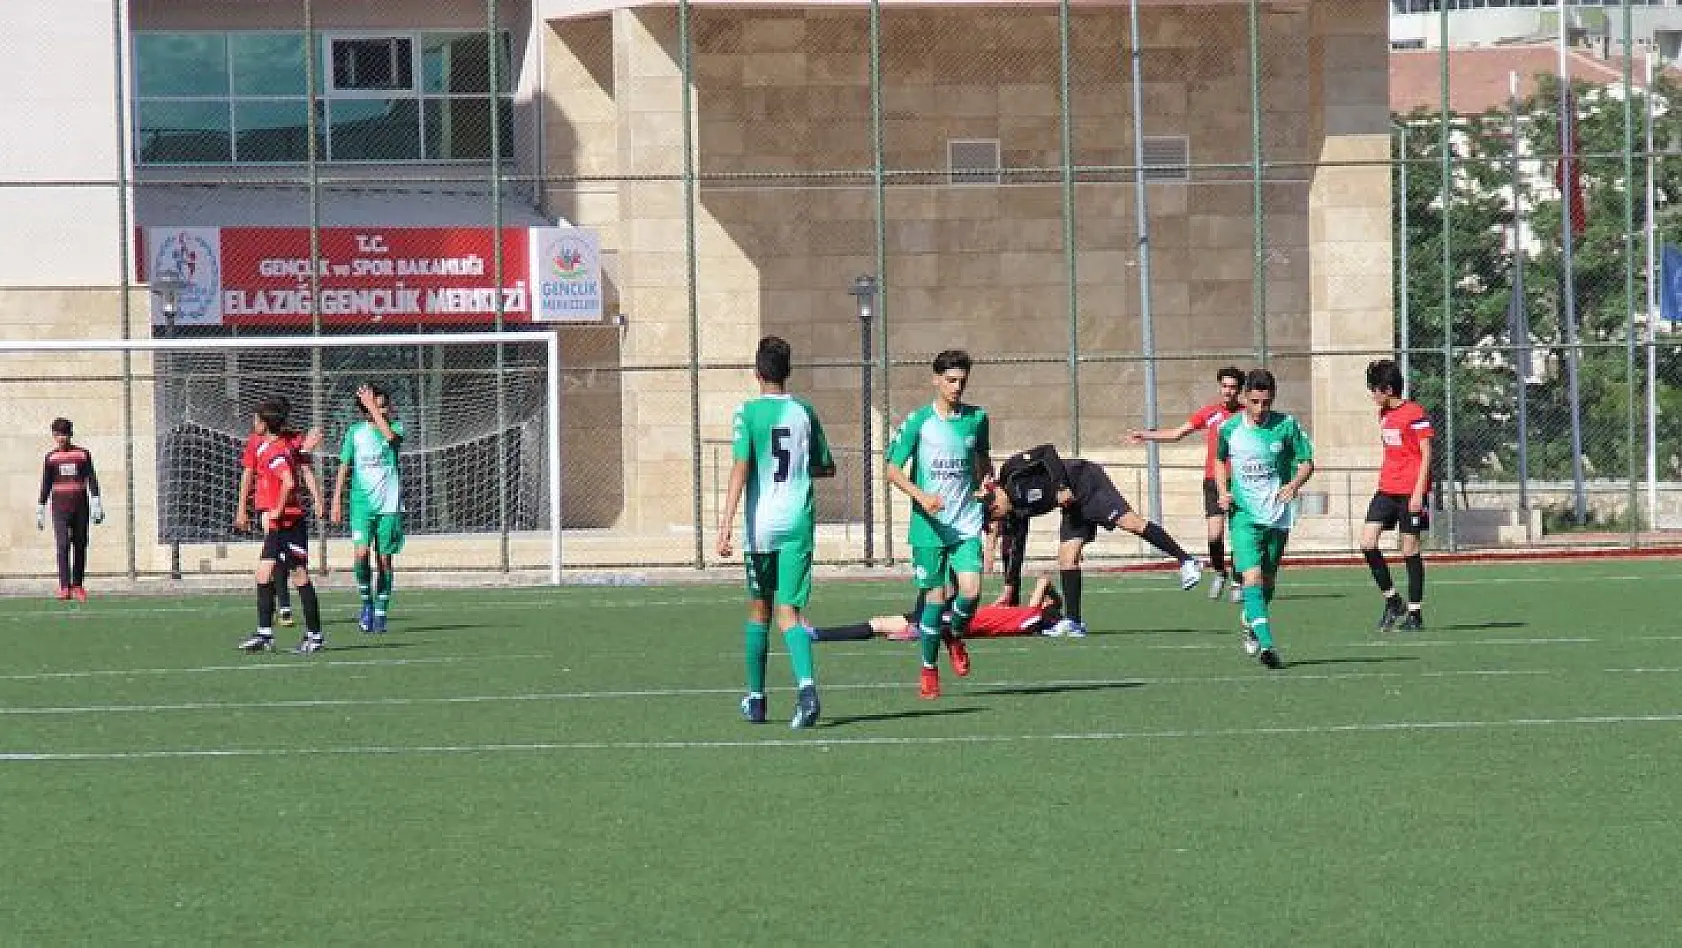 U14 Ligi bol gollü başladı